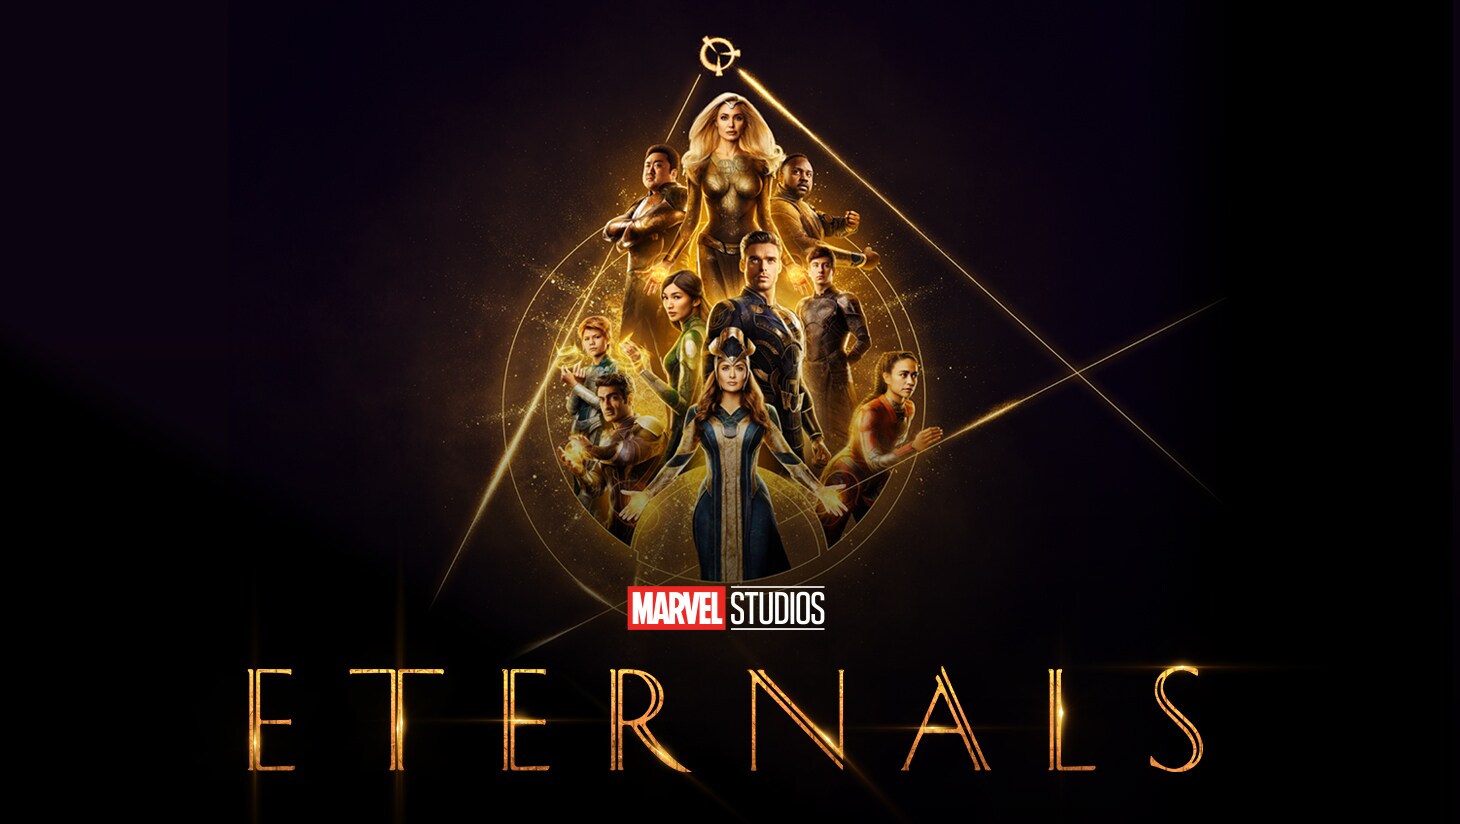 Eternals keyart featuring the cast.